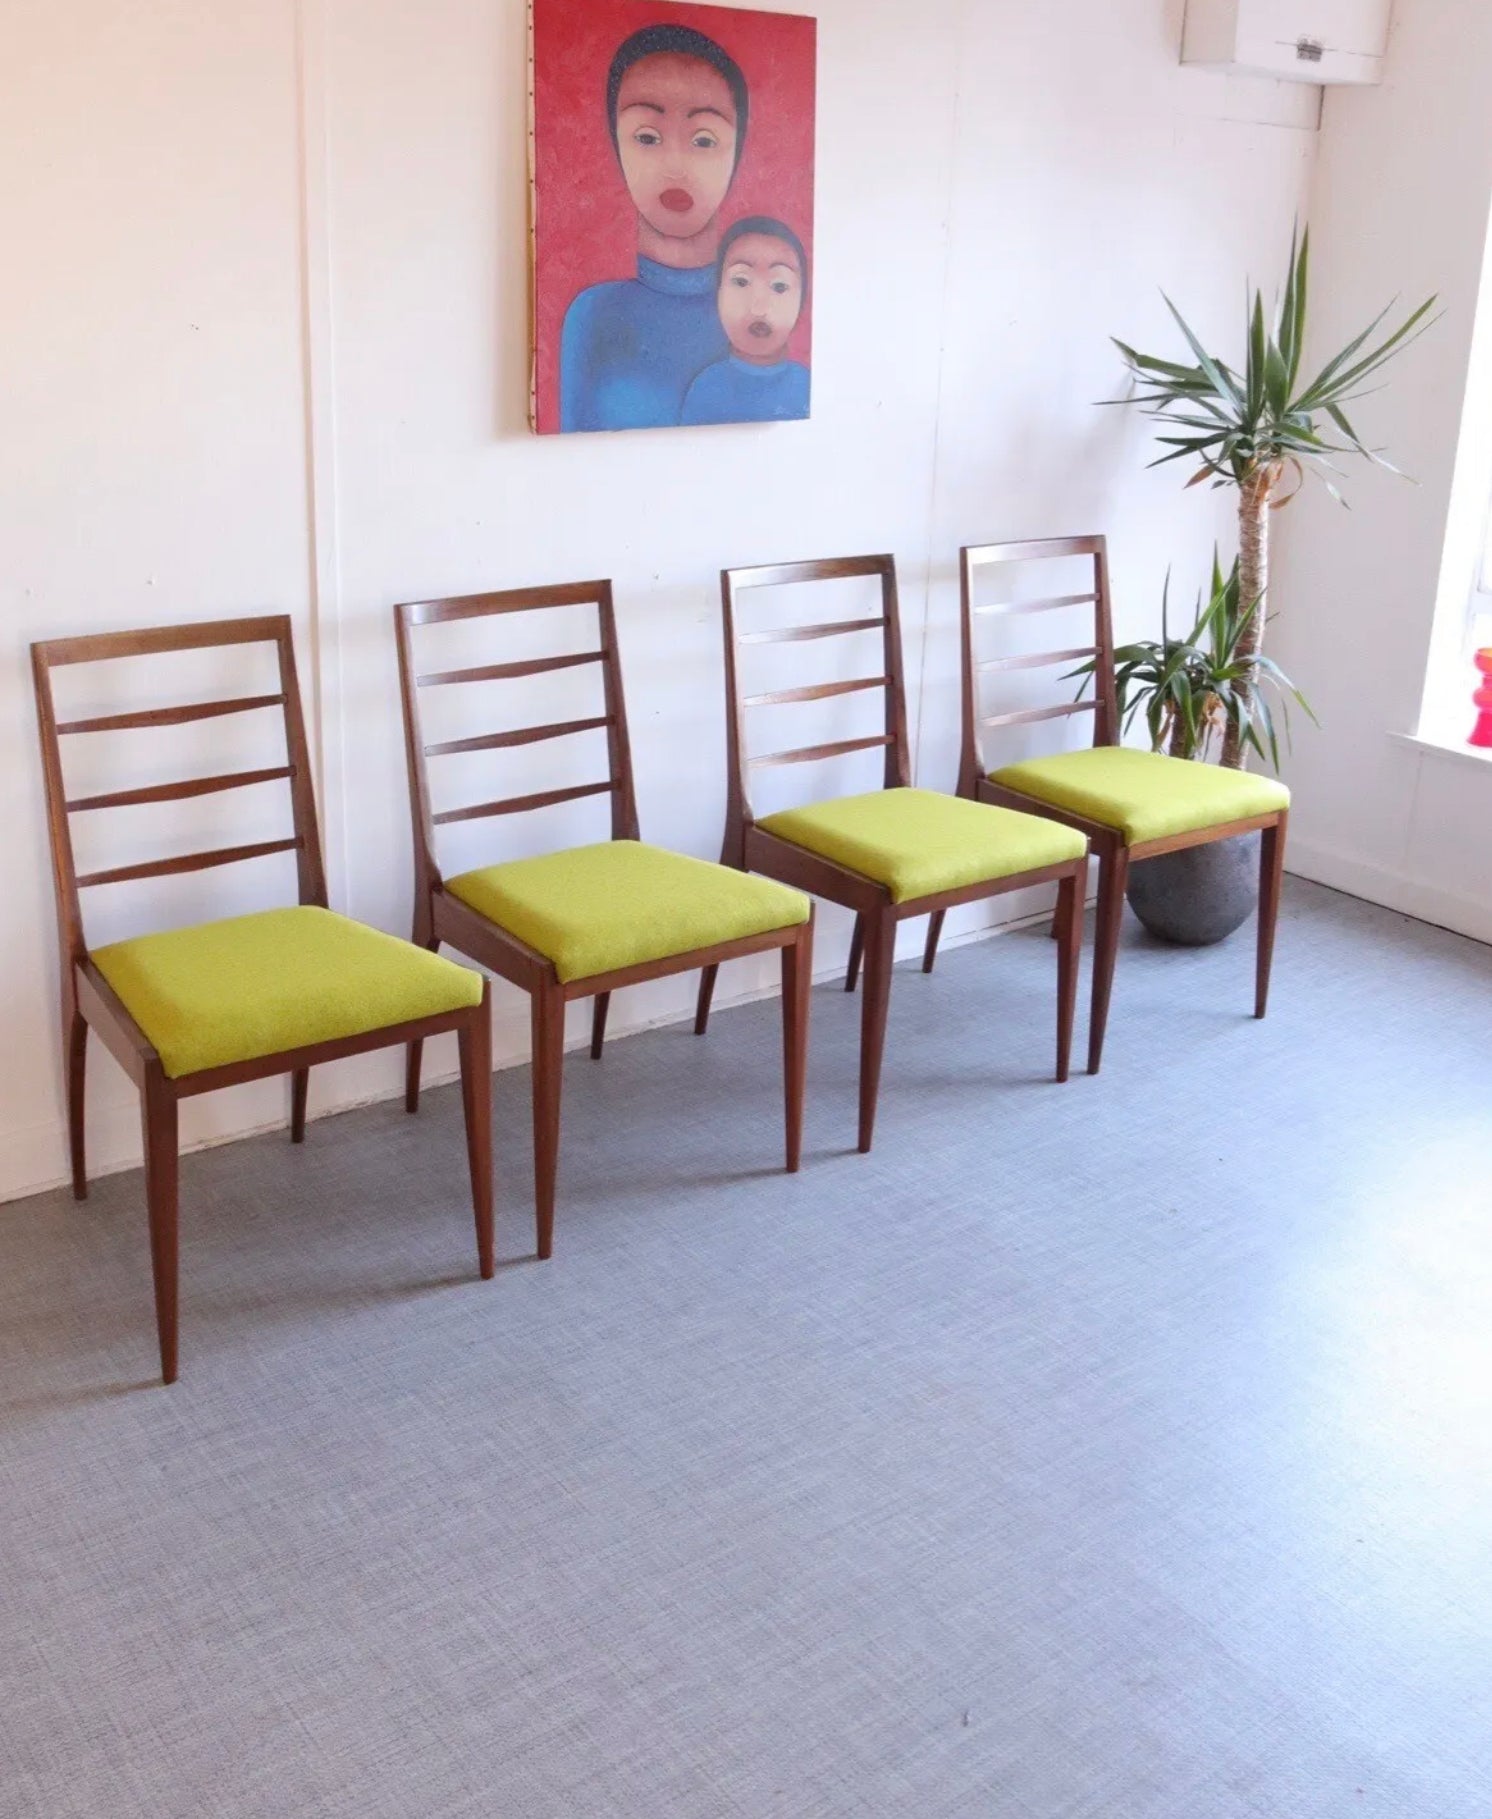 Set Of 4 McIntosh Mid Century Teak Dining Chairs Lime Wool Upholstery Retro - teakyfinders